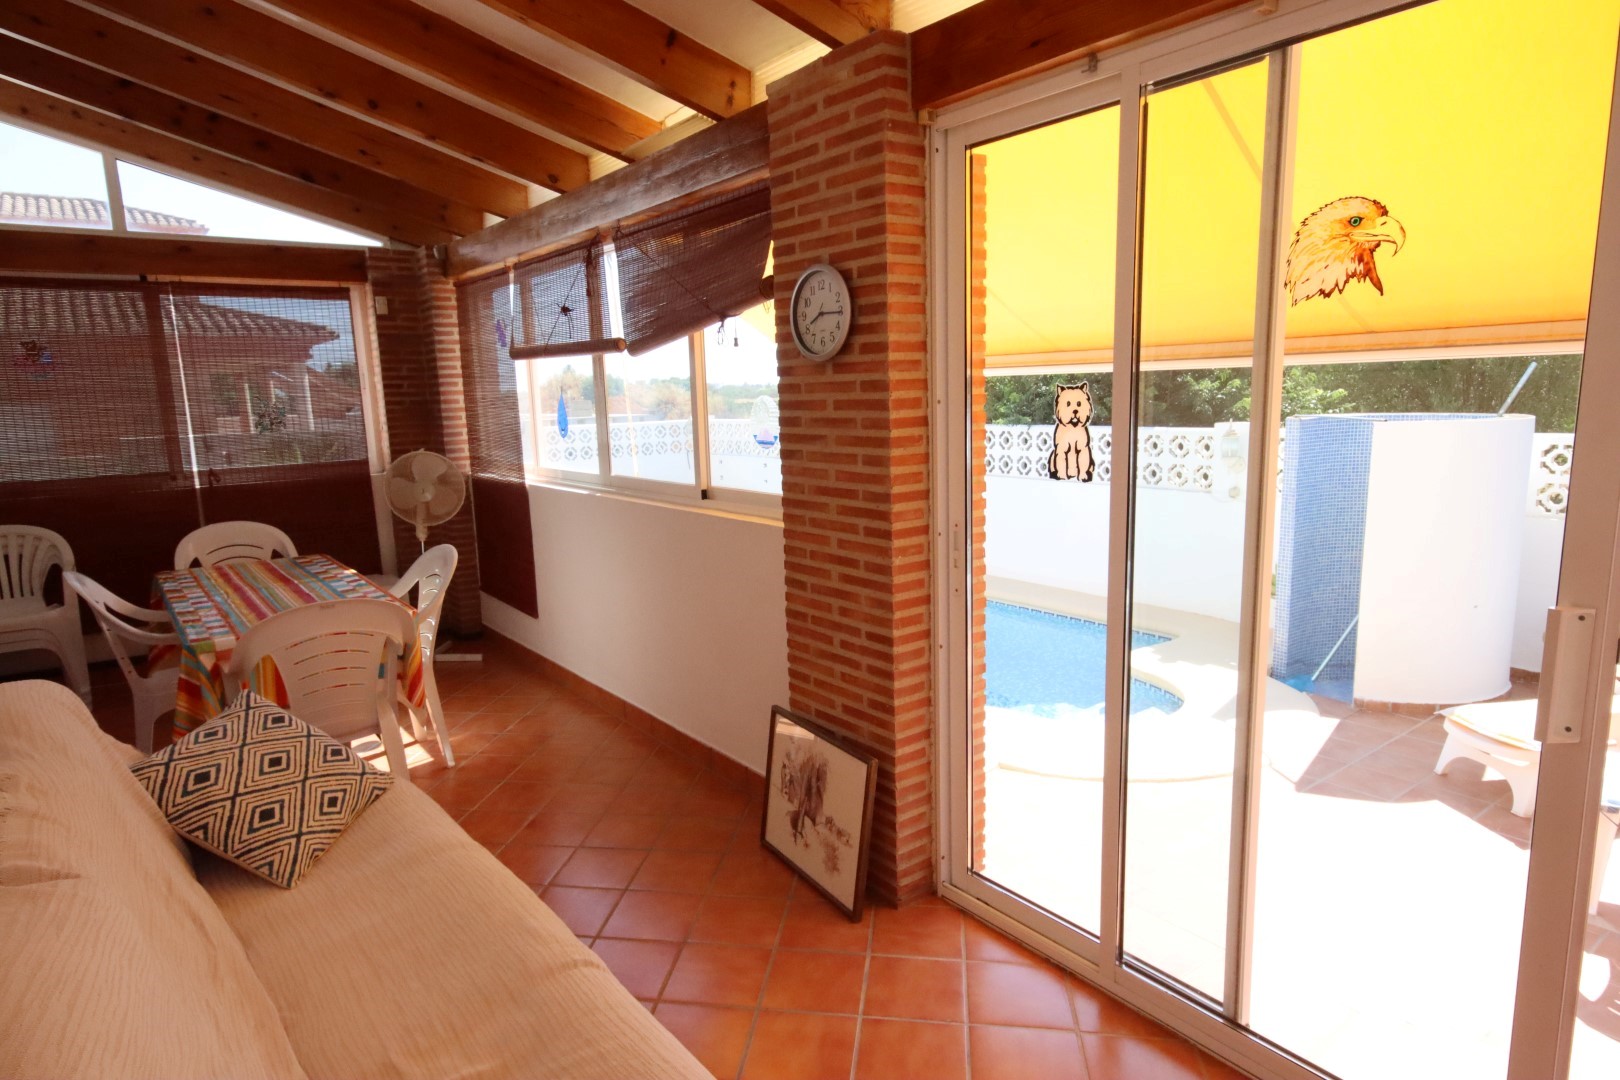 Villa de 3 dormitorios, piscina, Els Poblets, Denia